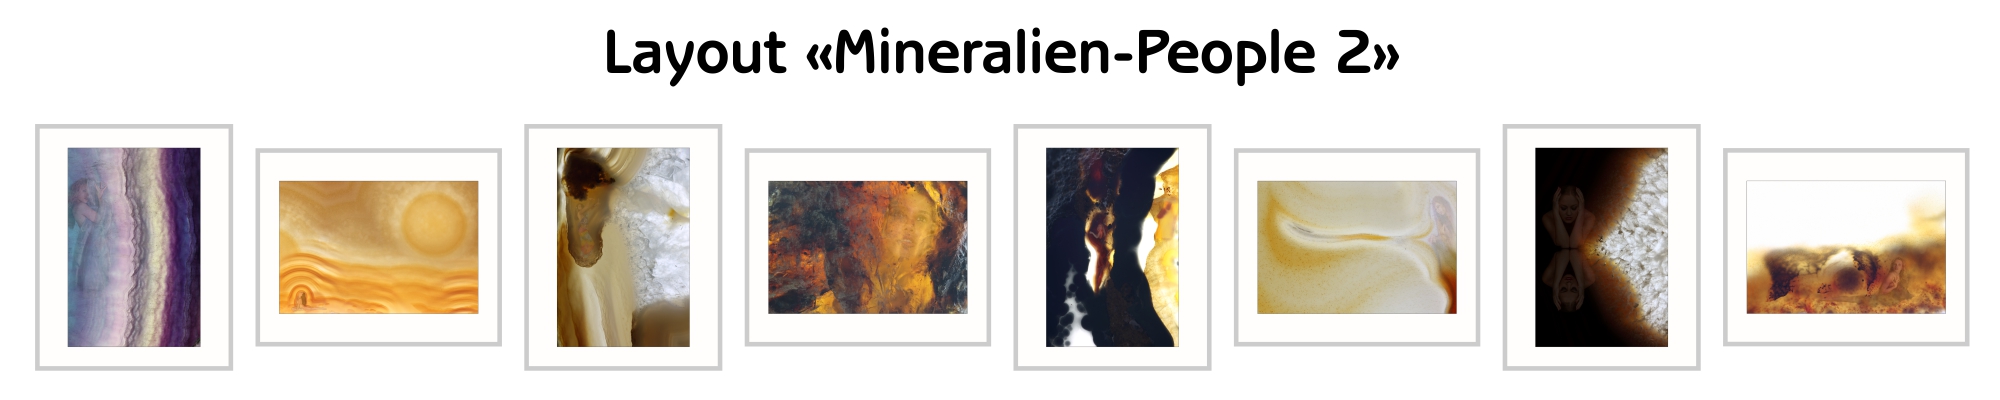 image-10217780-Layout-Mineralien-People-2-d3d94.jpg